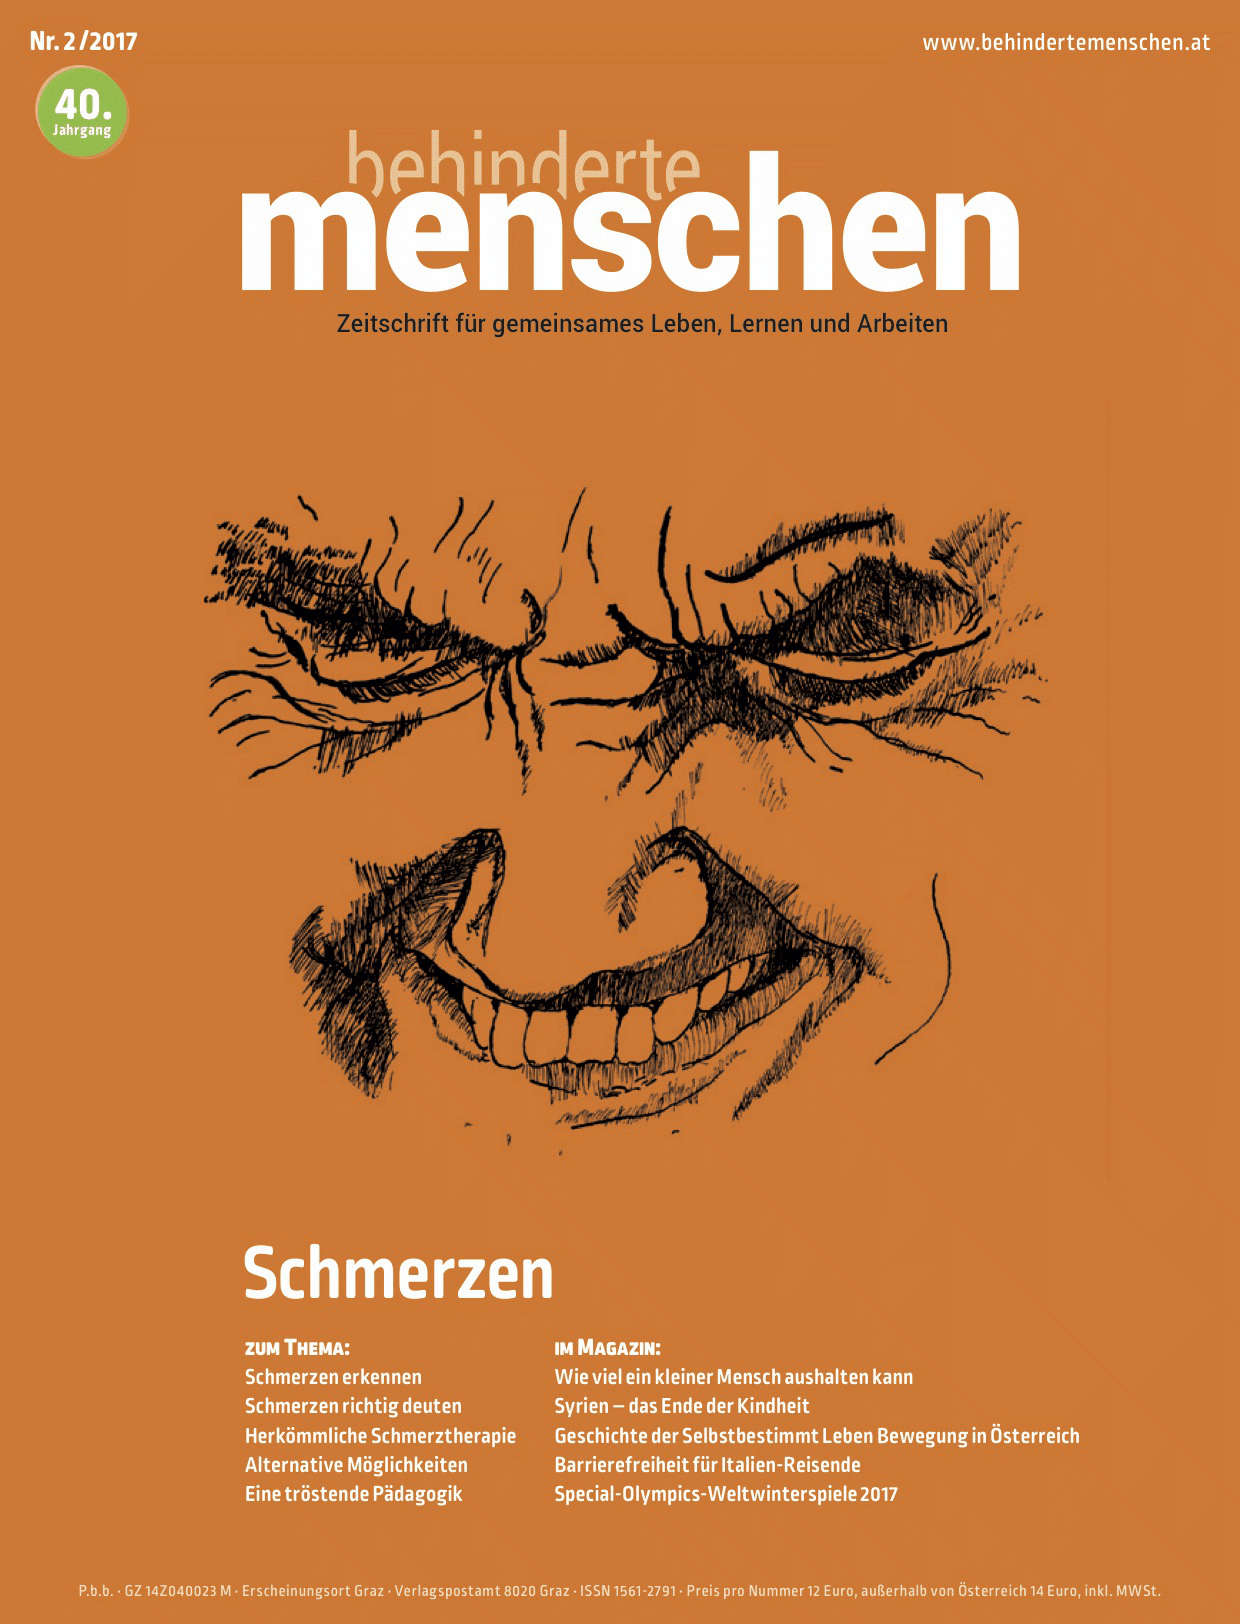 Titelbild der Zeitschrift BEHINDERTE MENSCHEN, Ausgabe 2/2017 "Schmerzen"